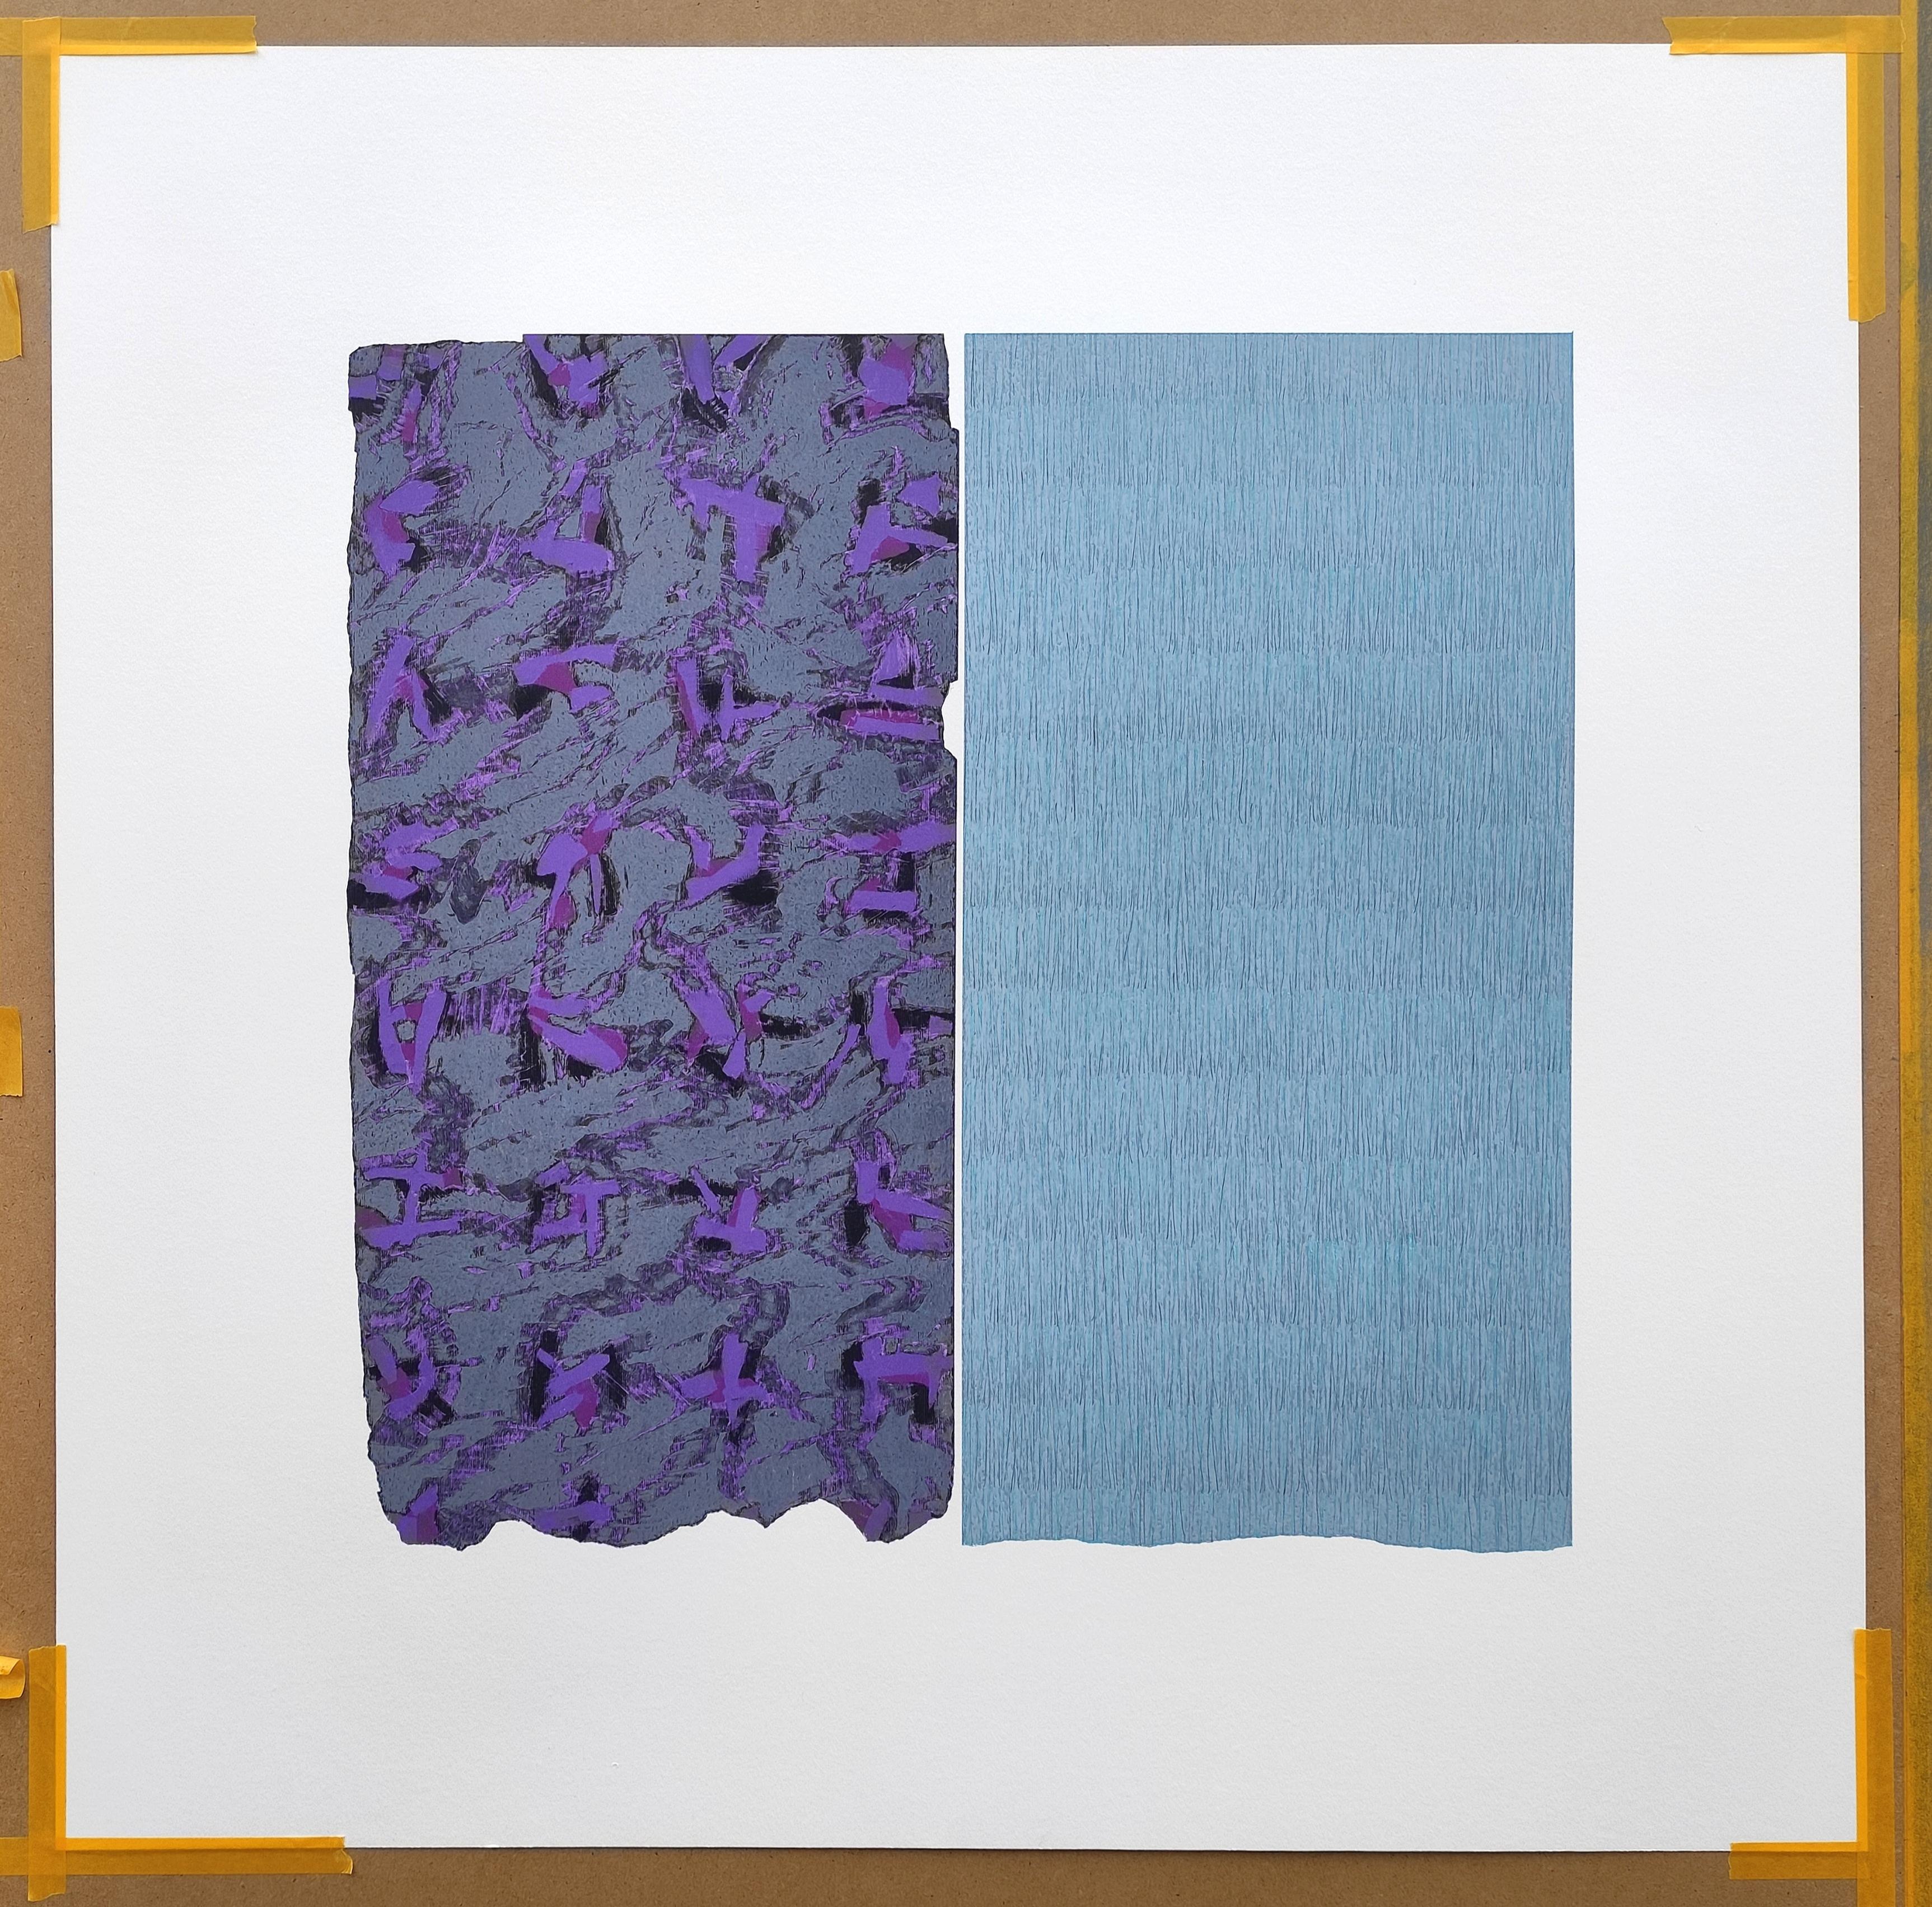 Moucherolle violet - Peinture abstraite contemporaine expressive au pastel à l'huile - Contemporain Painting par Janusz Kokot